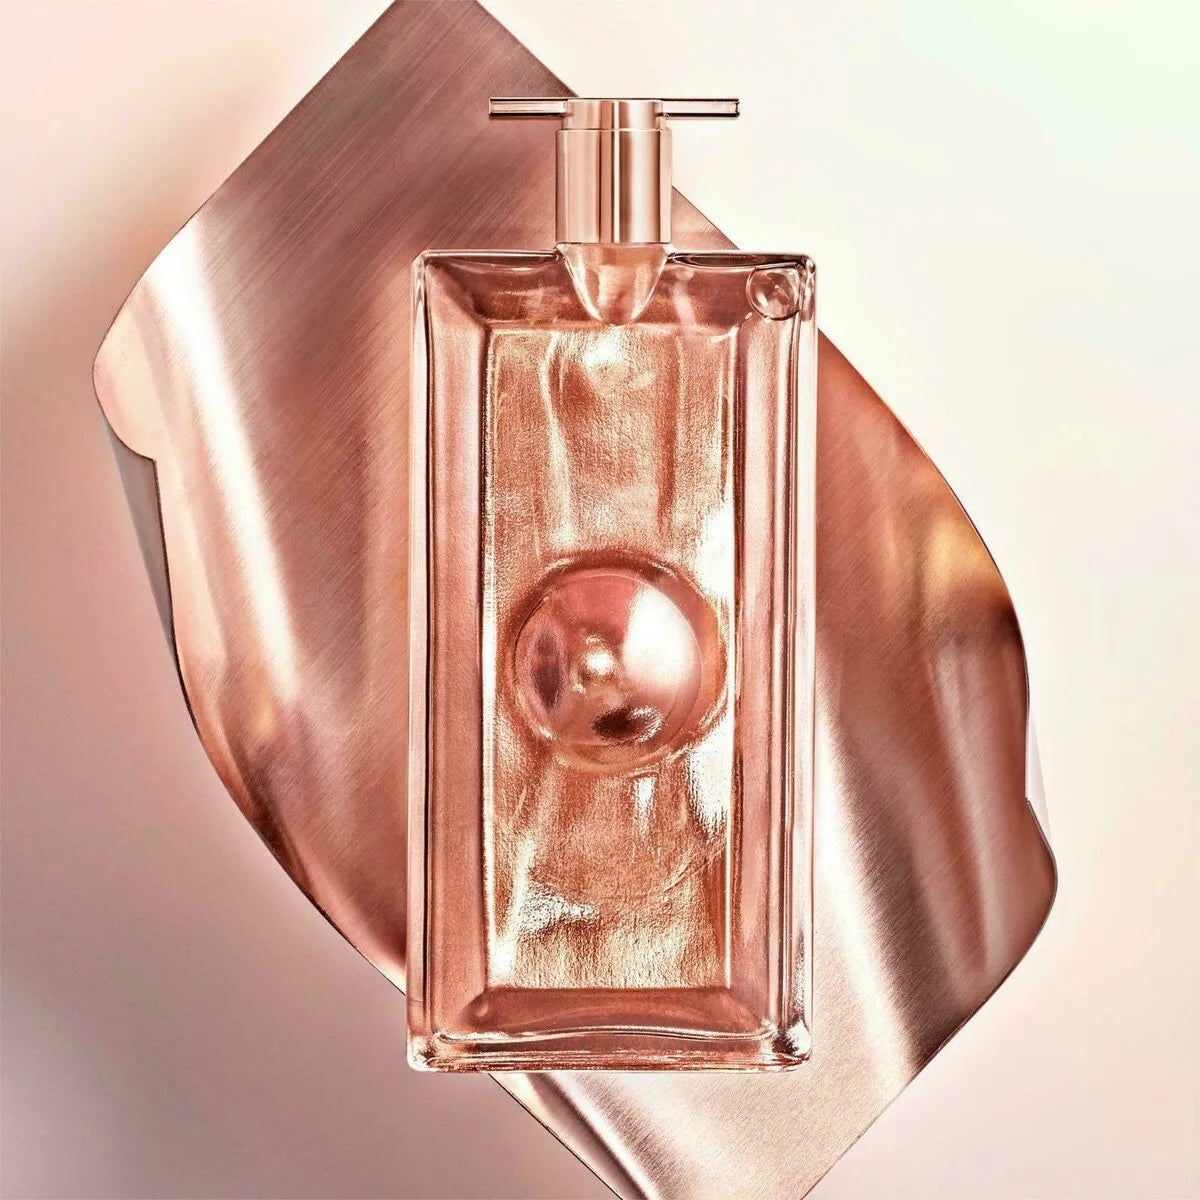 Lancome Idole L'INTENSE For Women - Eau De Parfum, 75ml